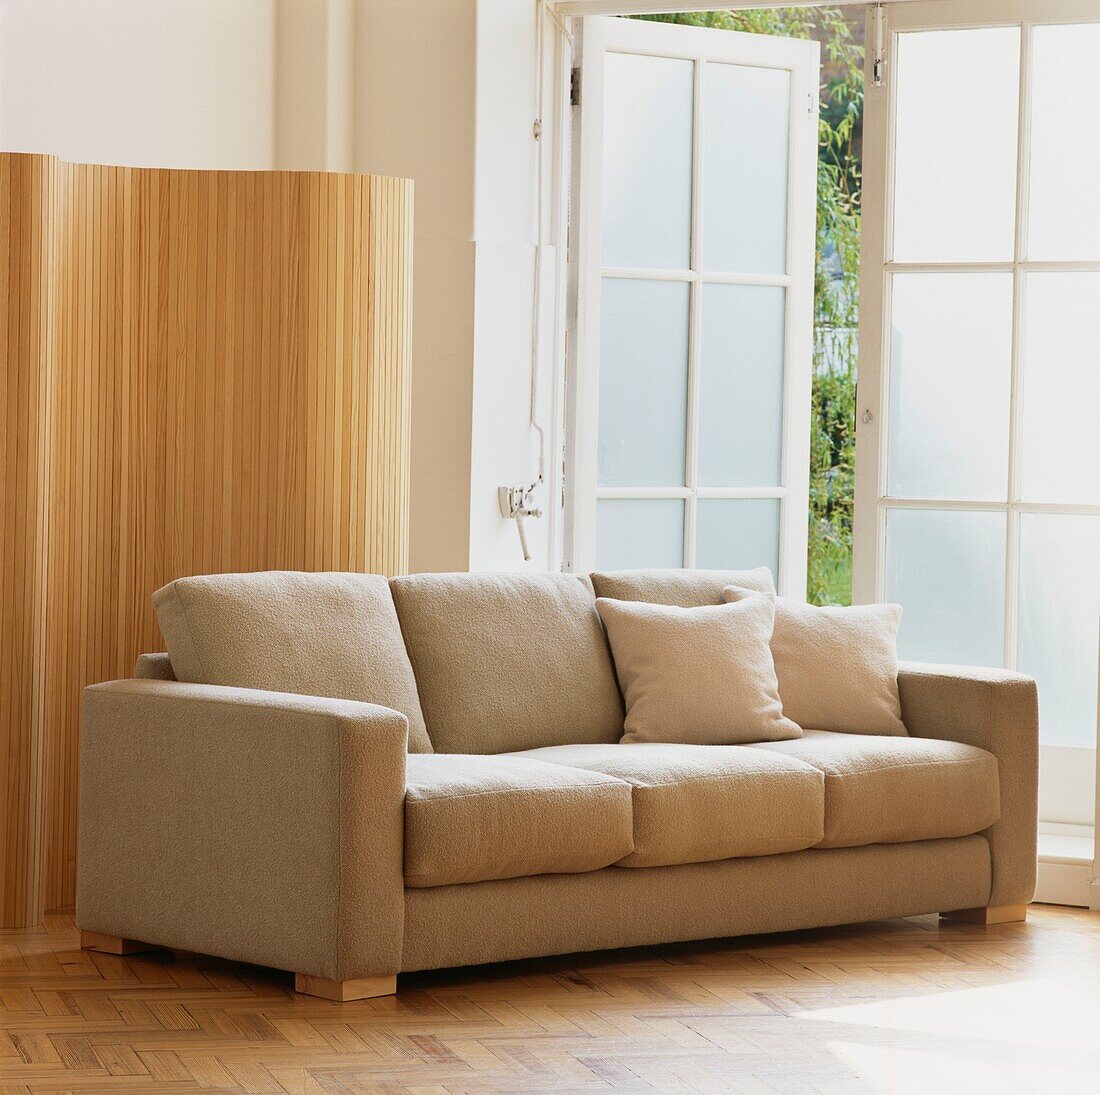 Beige upholstered sofa in living room beside and open door and wooden screen